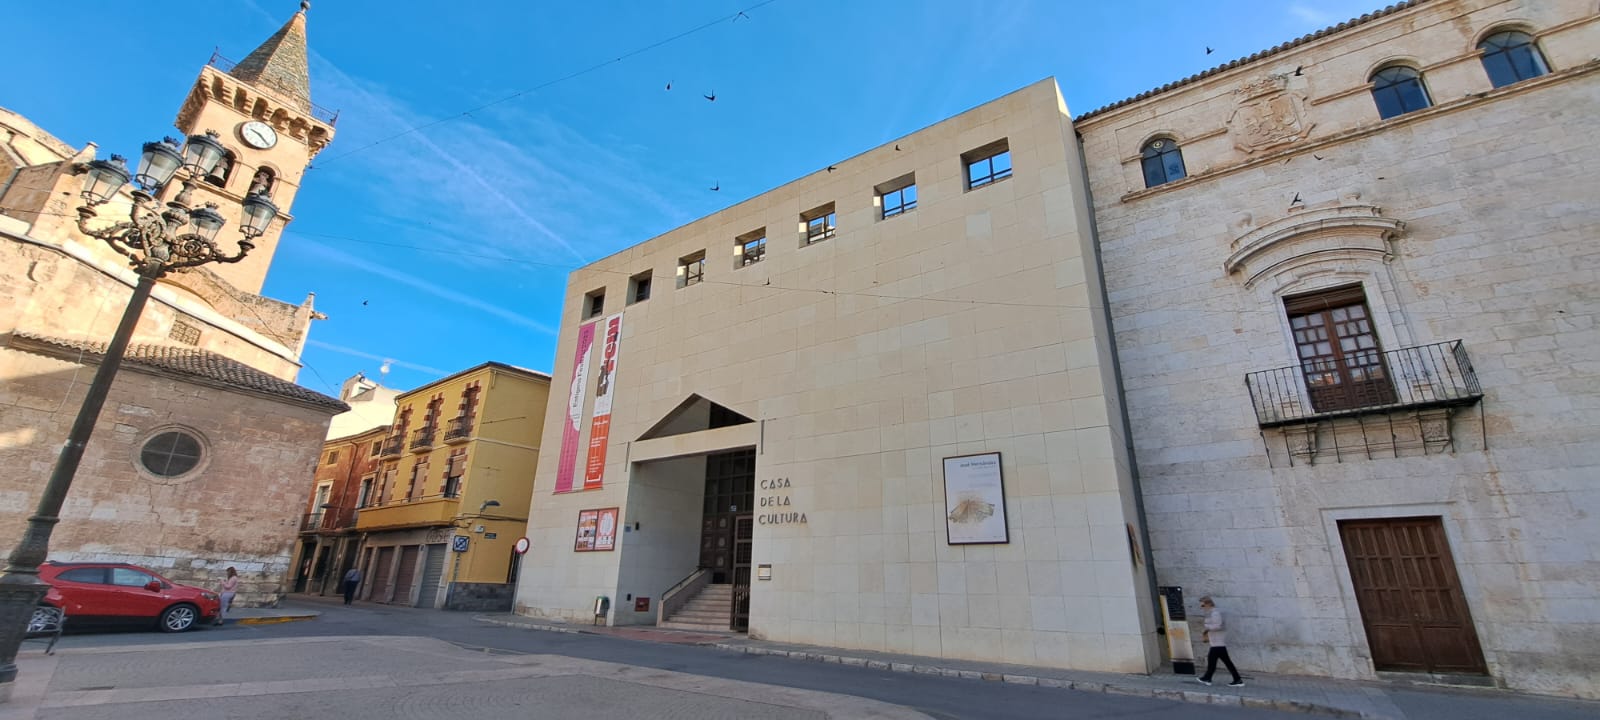 Villena se consolida como capital de la Cultura en la provincia de Alicante